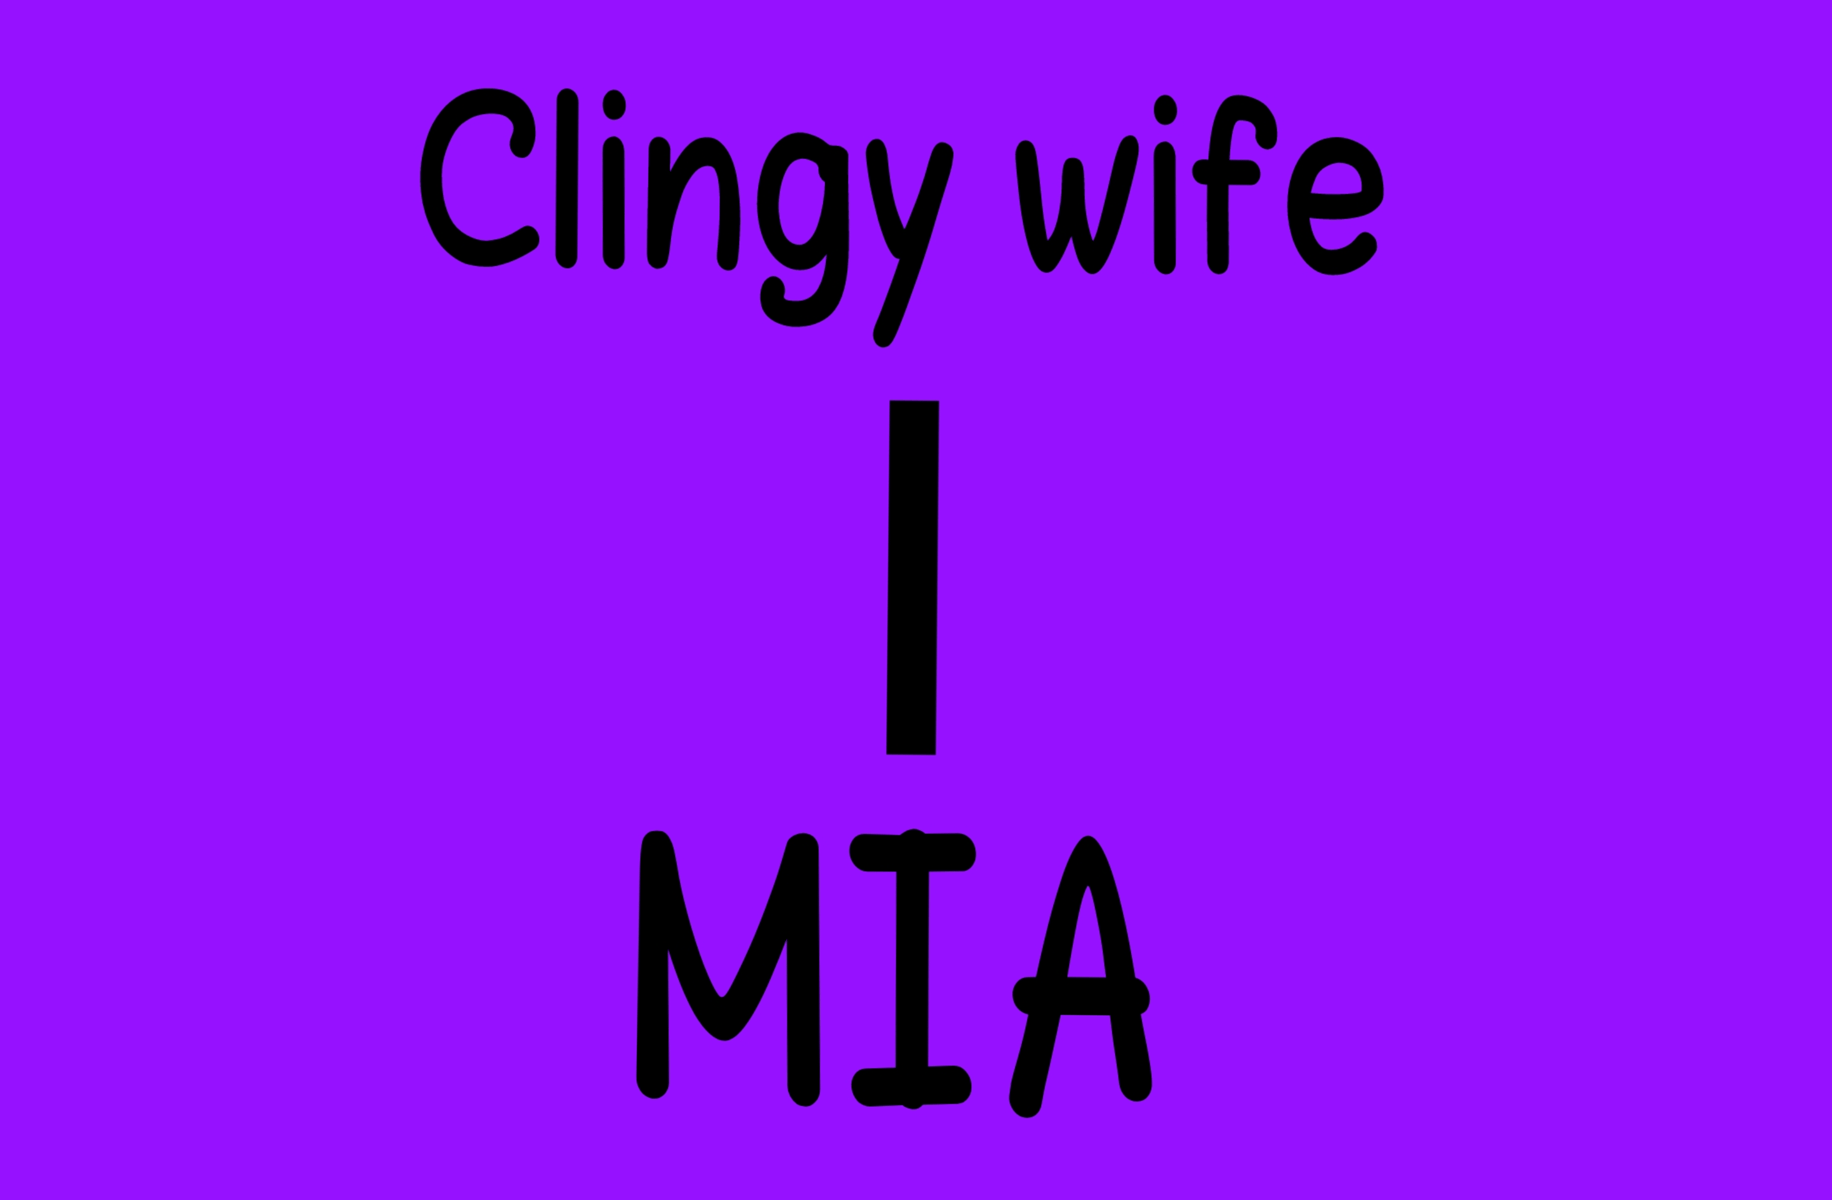 Clingy wife *Mia*